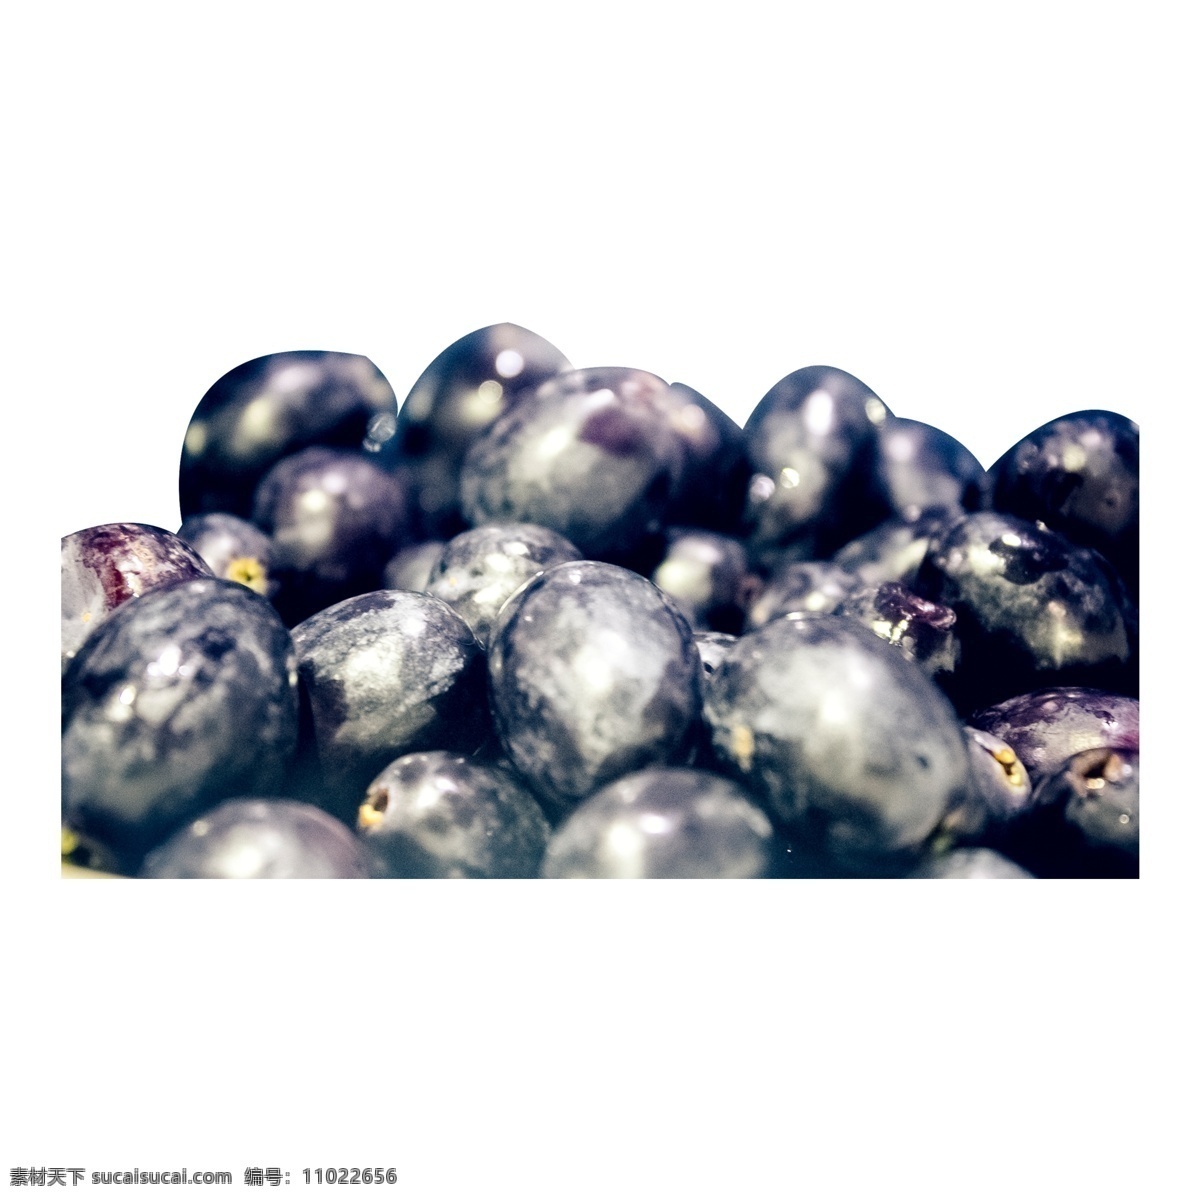 许多 新鲜 蓝莓 水果 新鲜水果 蓝色 营养 维生素 许多蓝莓 美味 甜食 甘甜 多汁 植物